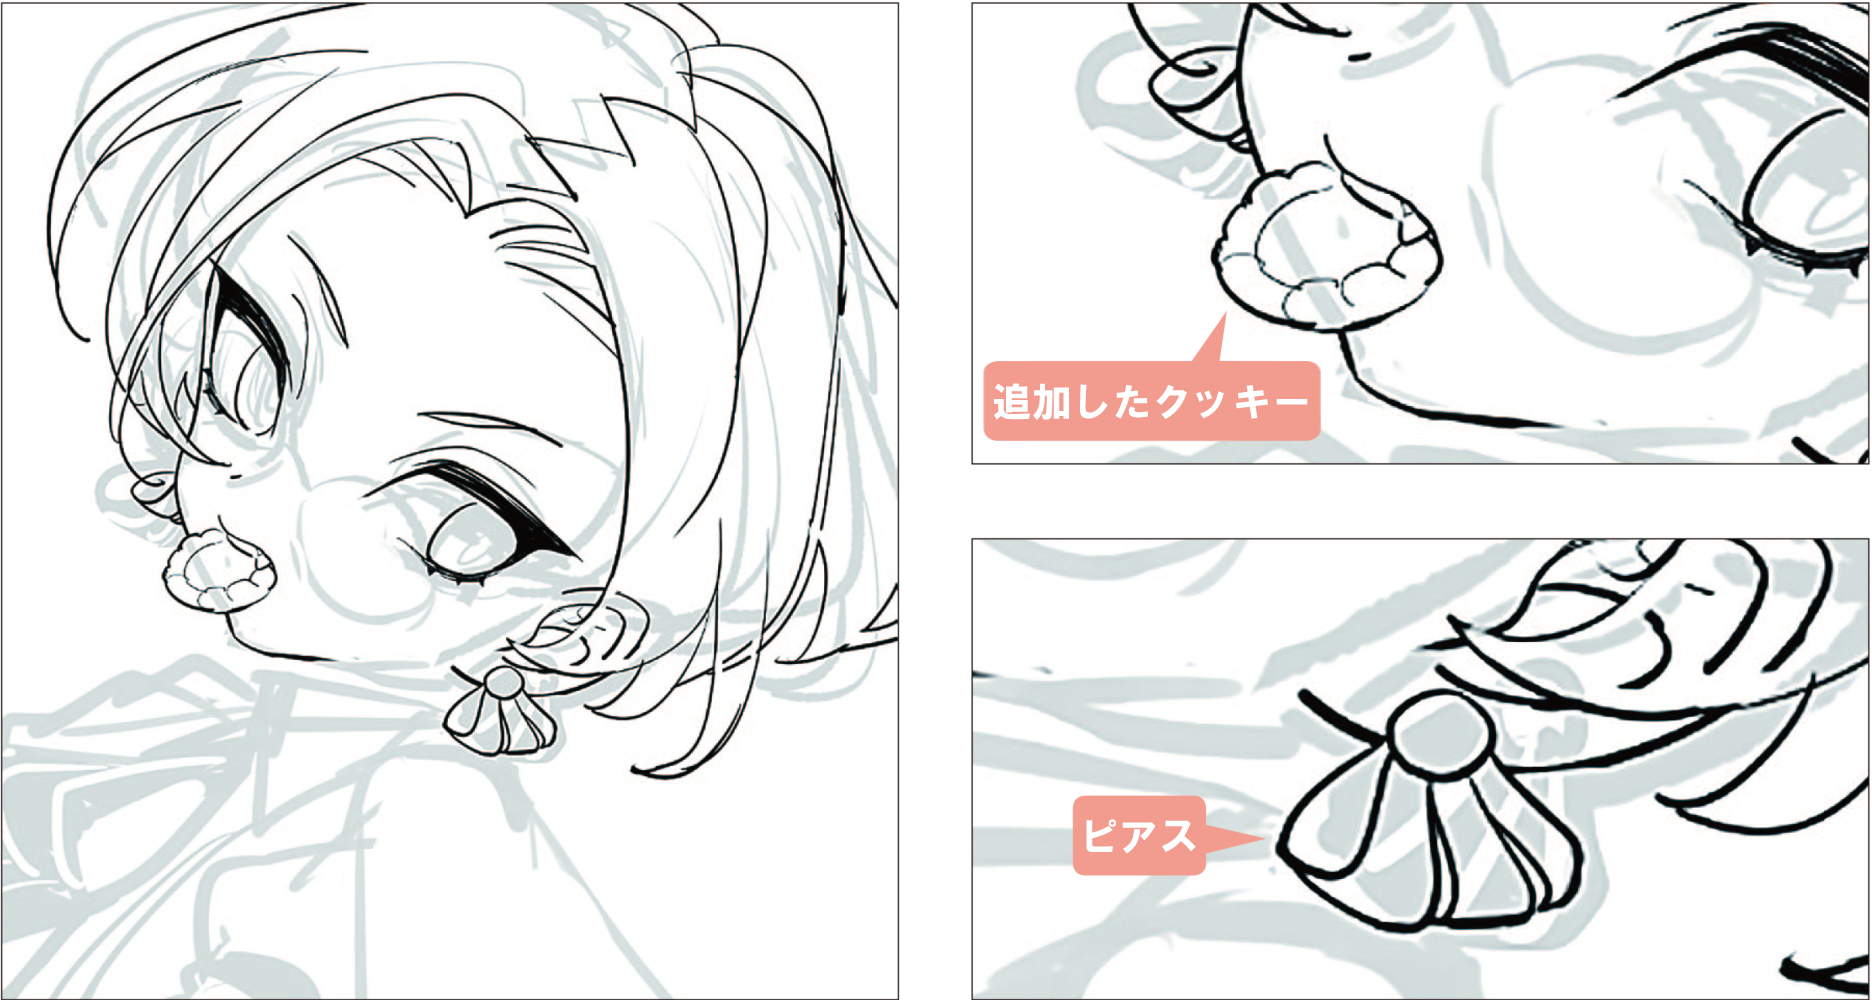 メイキング 配色で差をつける キナコさんの美少年イラスト作画 イラスト マンガ描き方ナビ